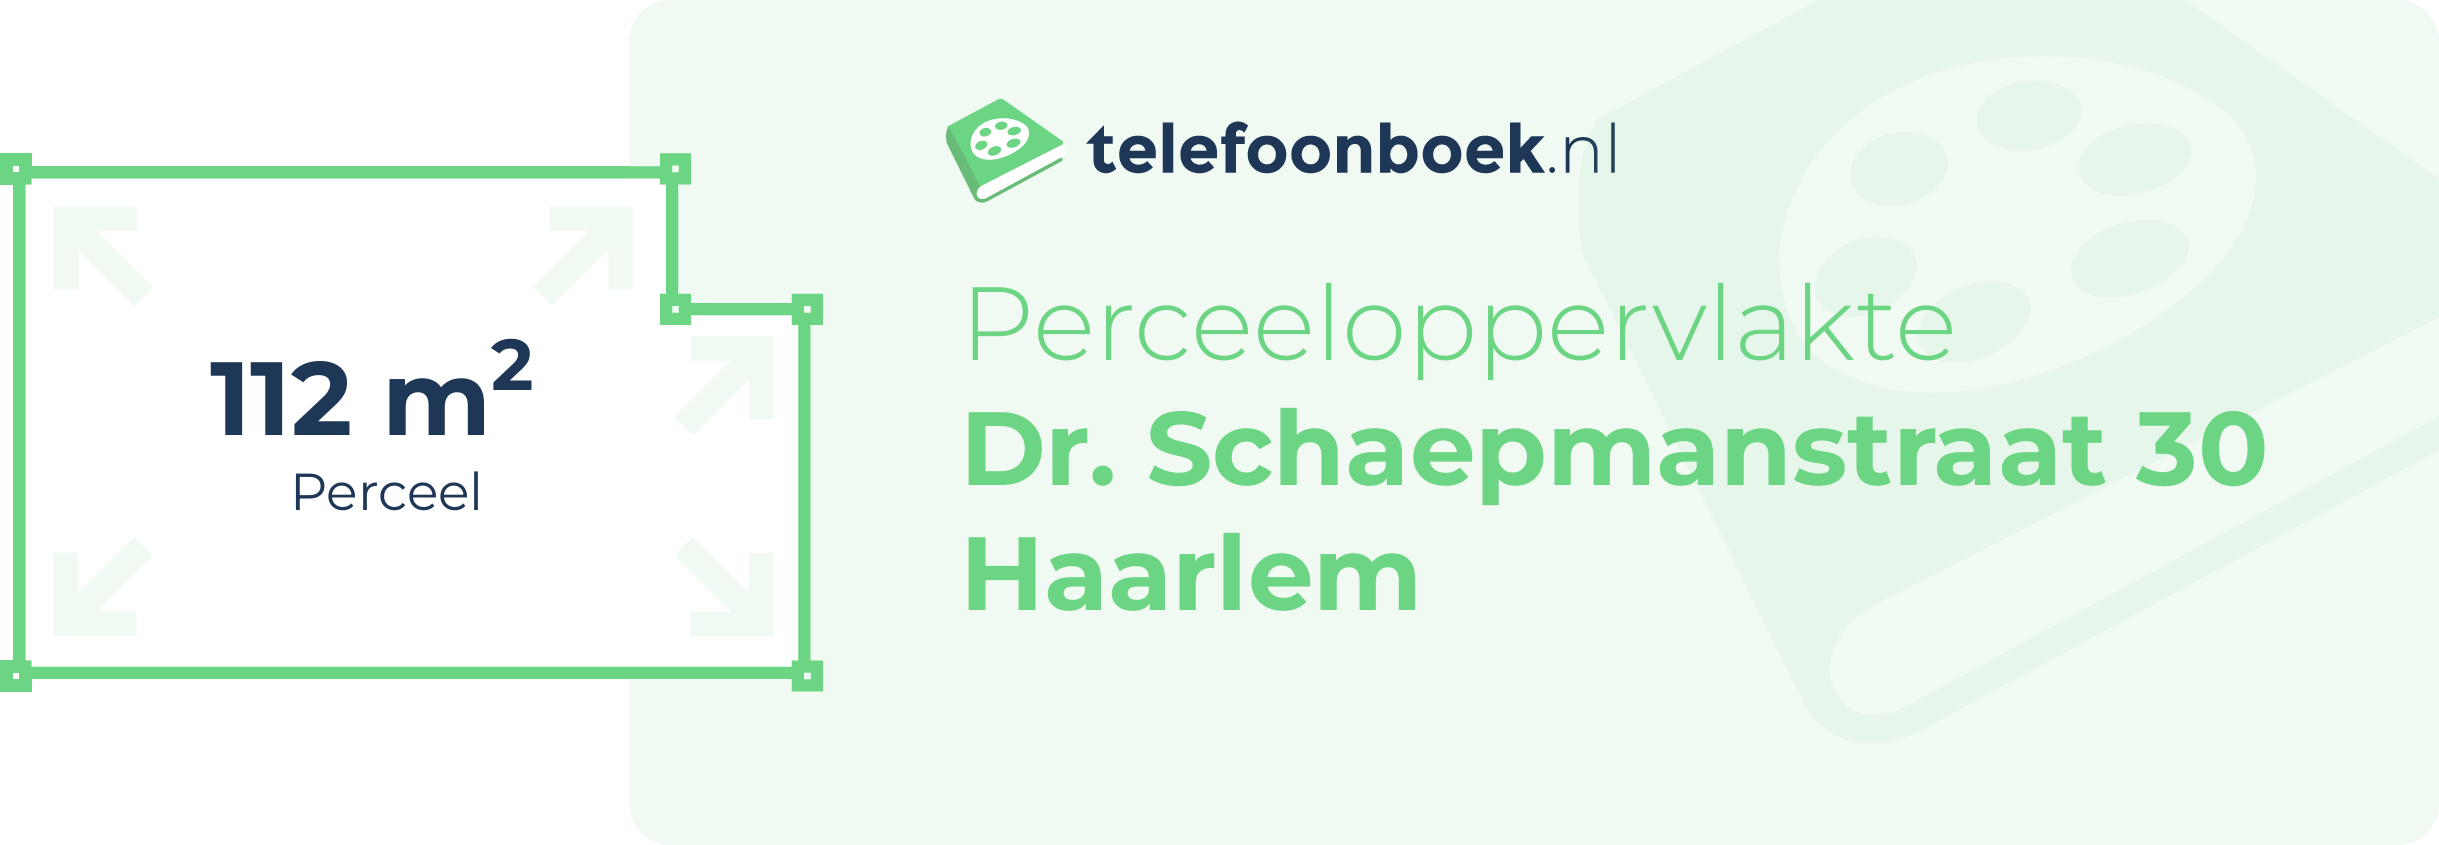 Perceeloppervlakte Dr. Schaepmanstraat 30 Haarlem